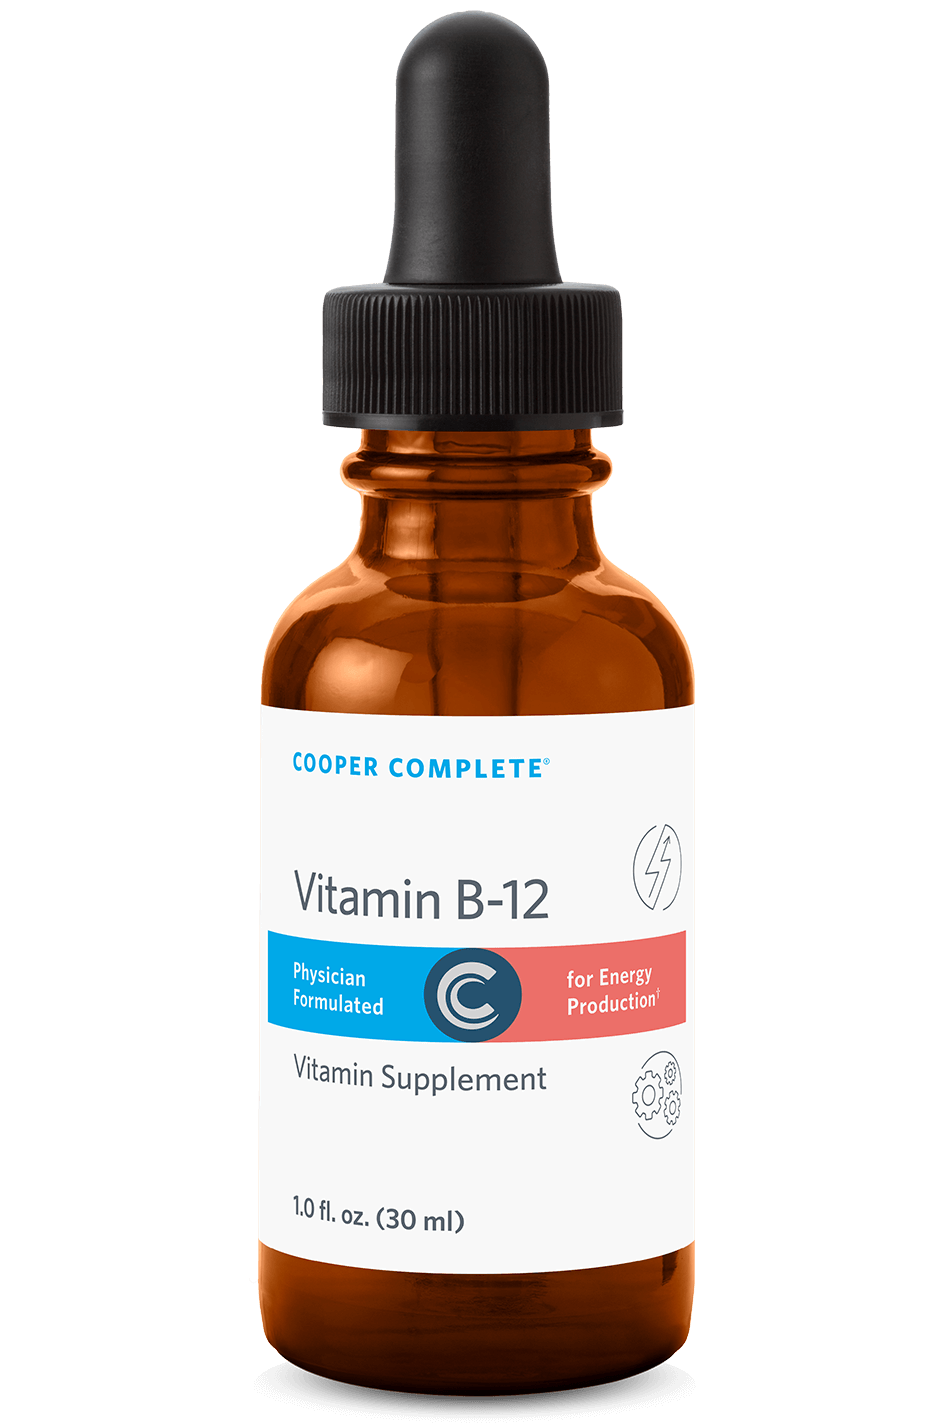 Photo of Cooper Complete Liquid Vitamin B12 Methylcobalamin Supplement bottle